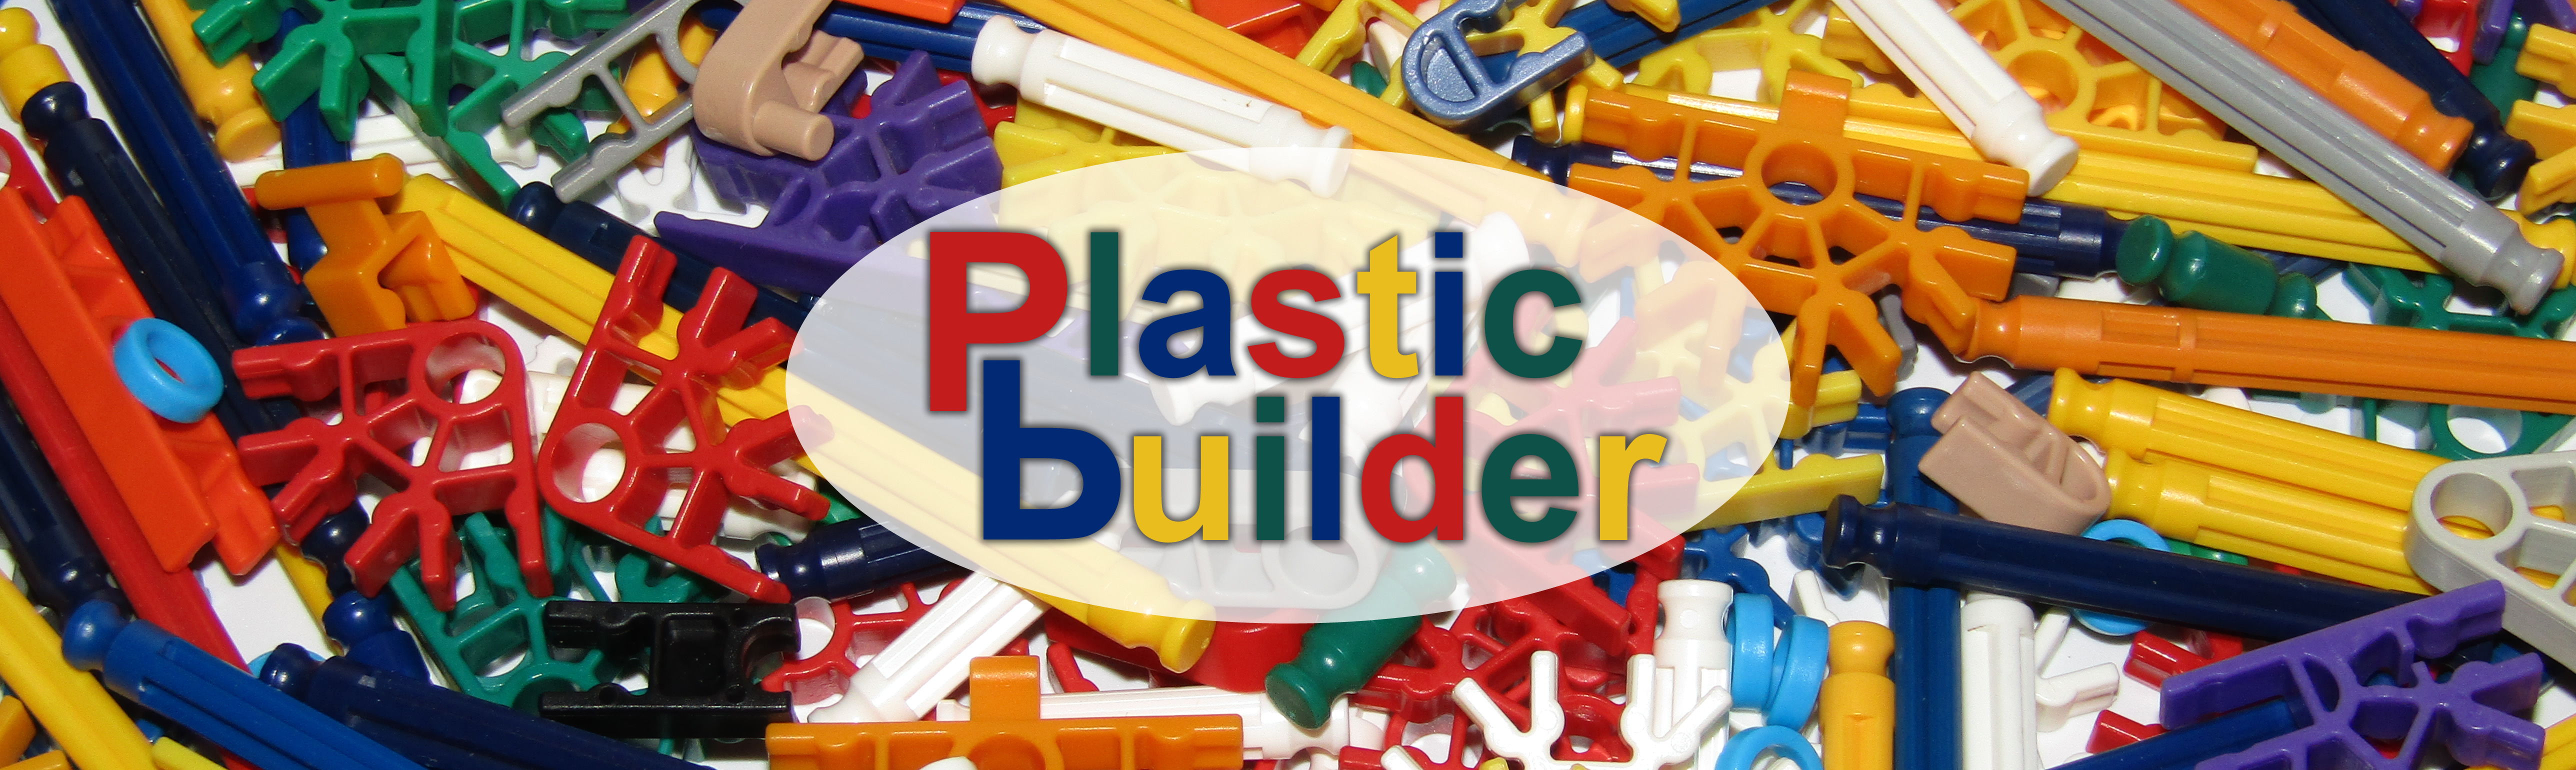 Plastic Builder